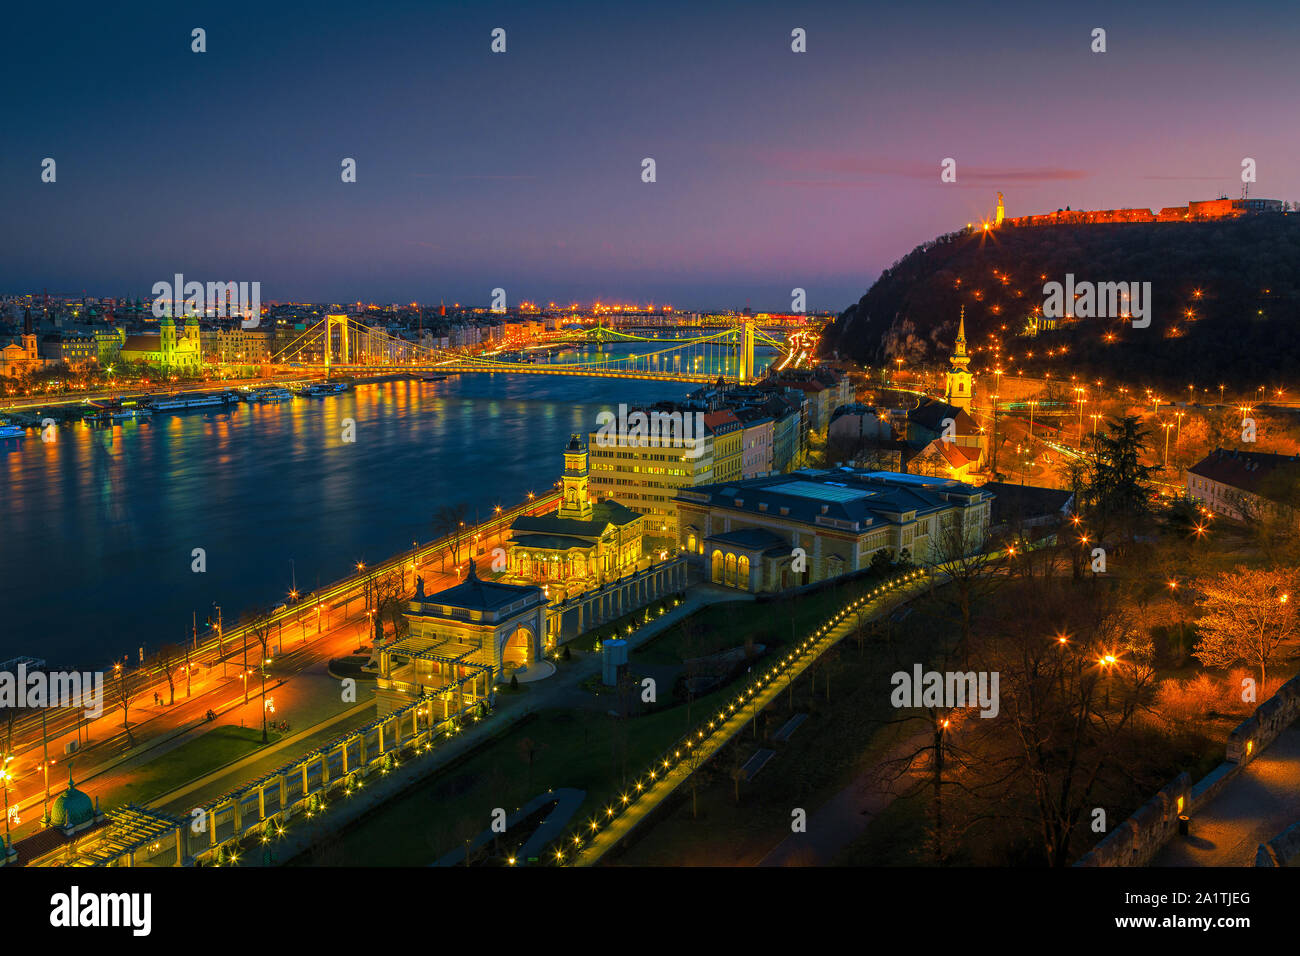 Malerische European Travel Lage. Schönen Abend Stadtbild Panorama mit fantastischen beleuchtete Elisabeth Brücke und die Donau bei bunten Su Stockfoto